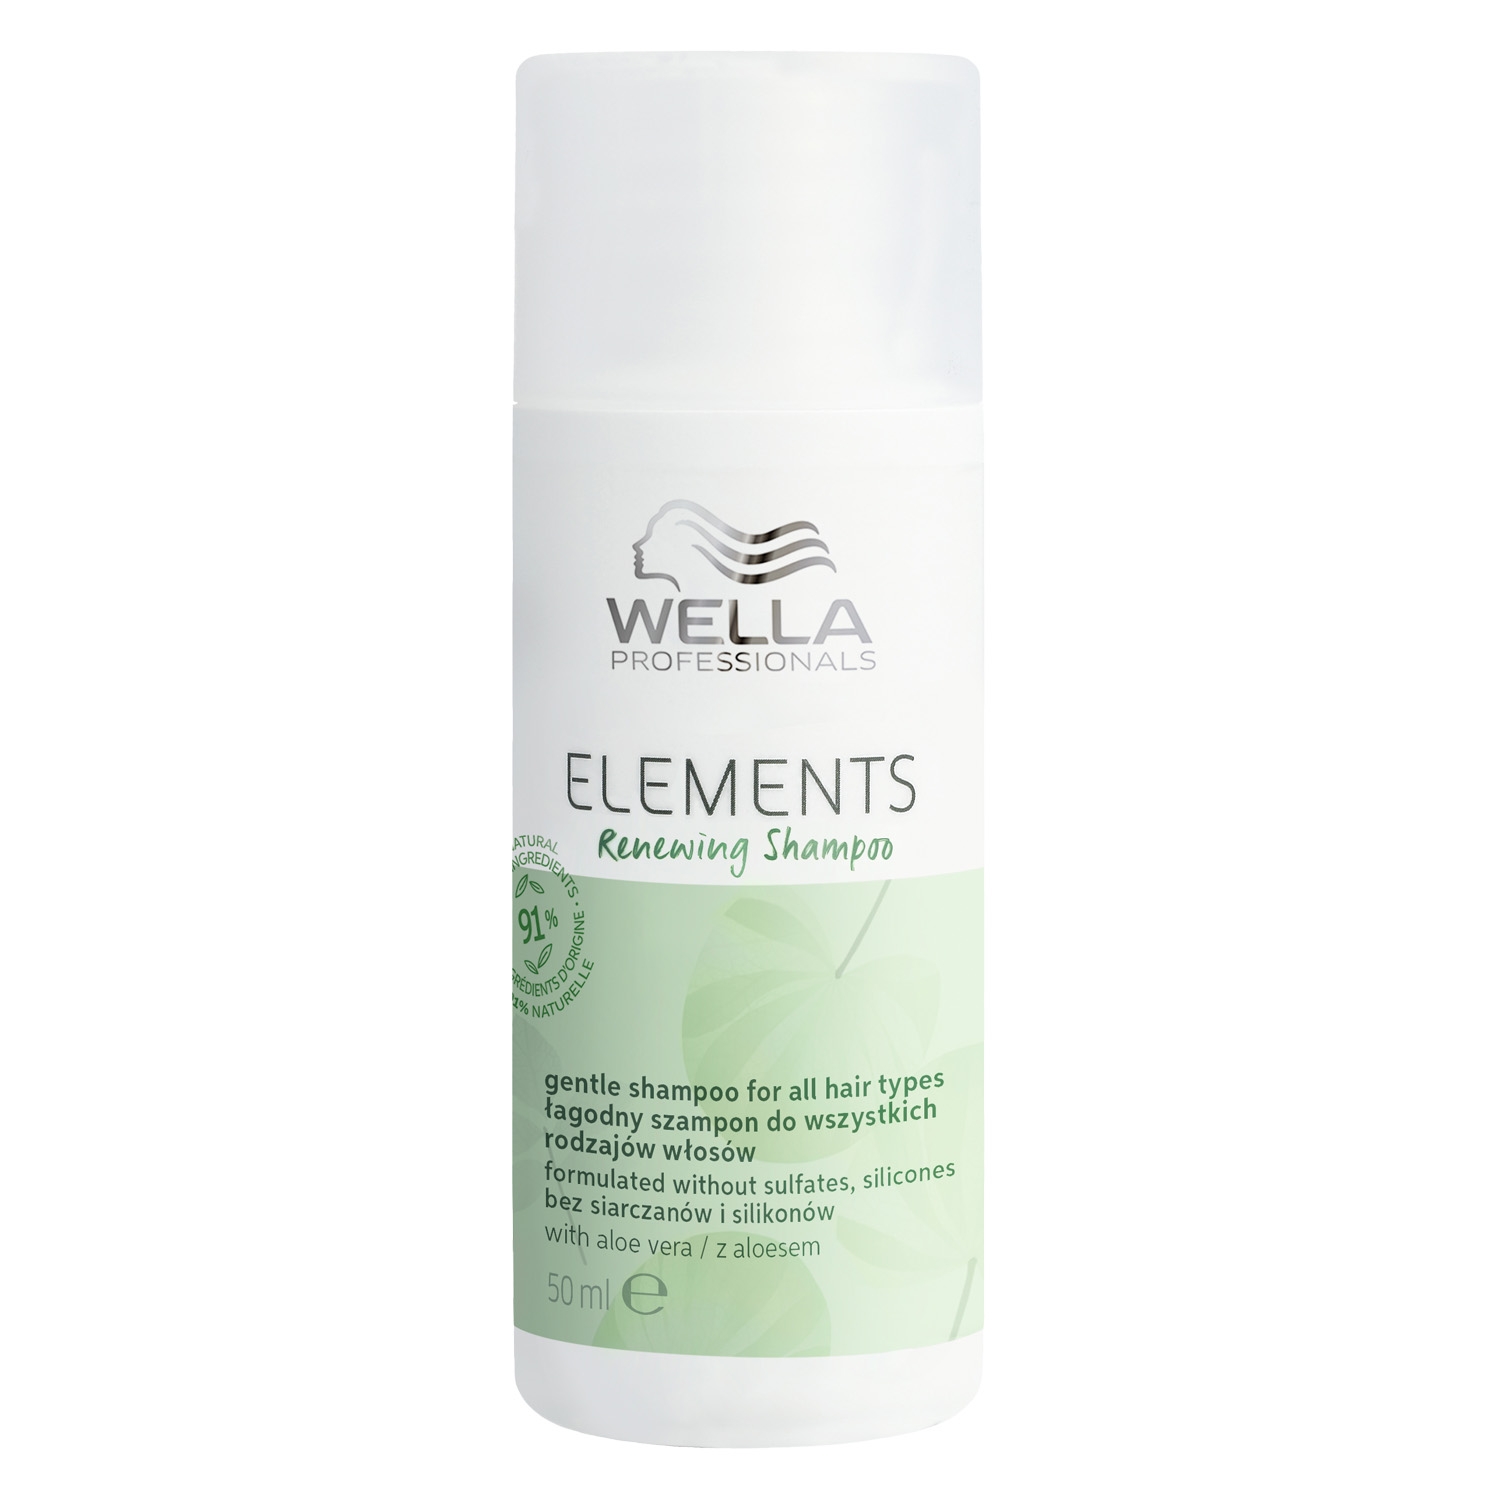 Produktbild von Elements - Renewing Shampoo